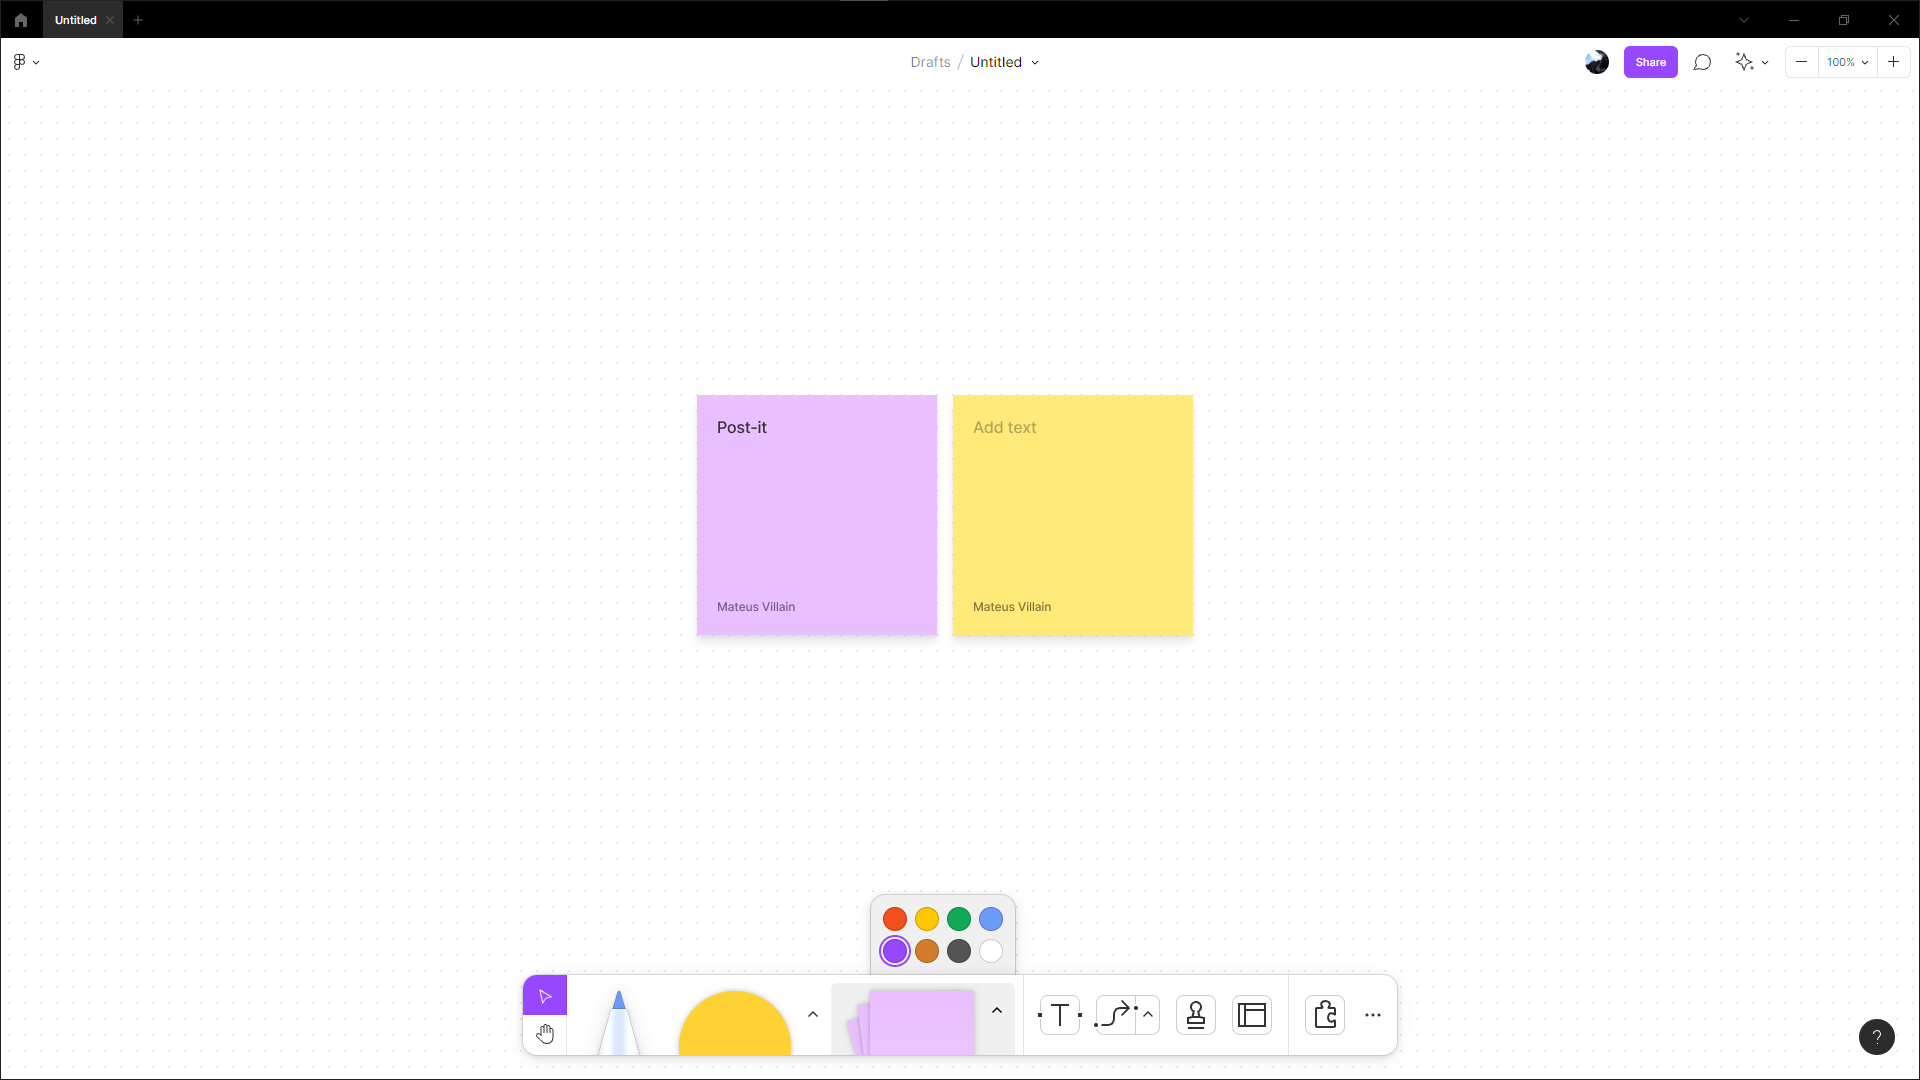 alt text: tela do FigJam com duas notas adesivos quadradas, uma roxa e uma amarela. Logo abaixo no menu central inferior, o botão de notas adesivas está destacado possibilitando escolher a cor da nota adesiva.